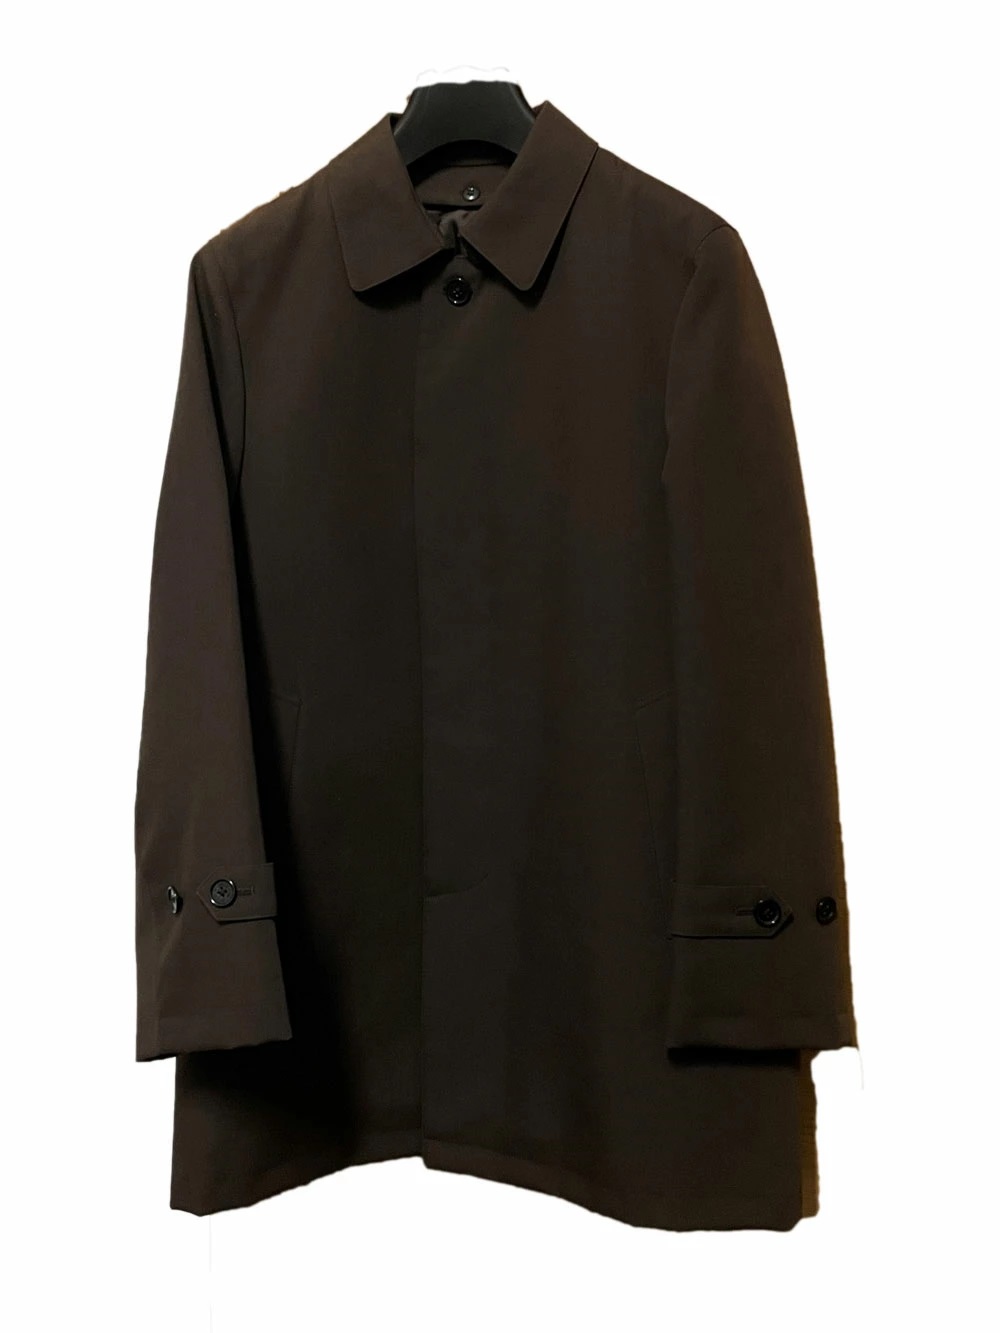 B товар бизнес пальто мужской пальто пальто с отложным воротником большой размер BIG размер S M L LL 3L 4L 5L 6L чёрный чай черный Brown 